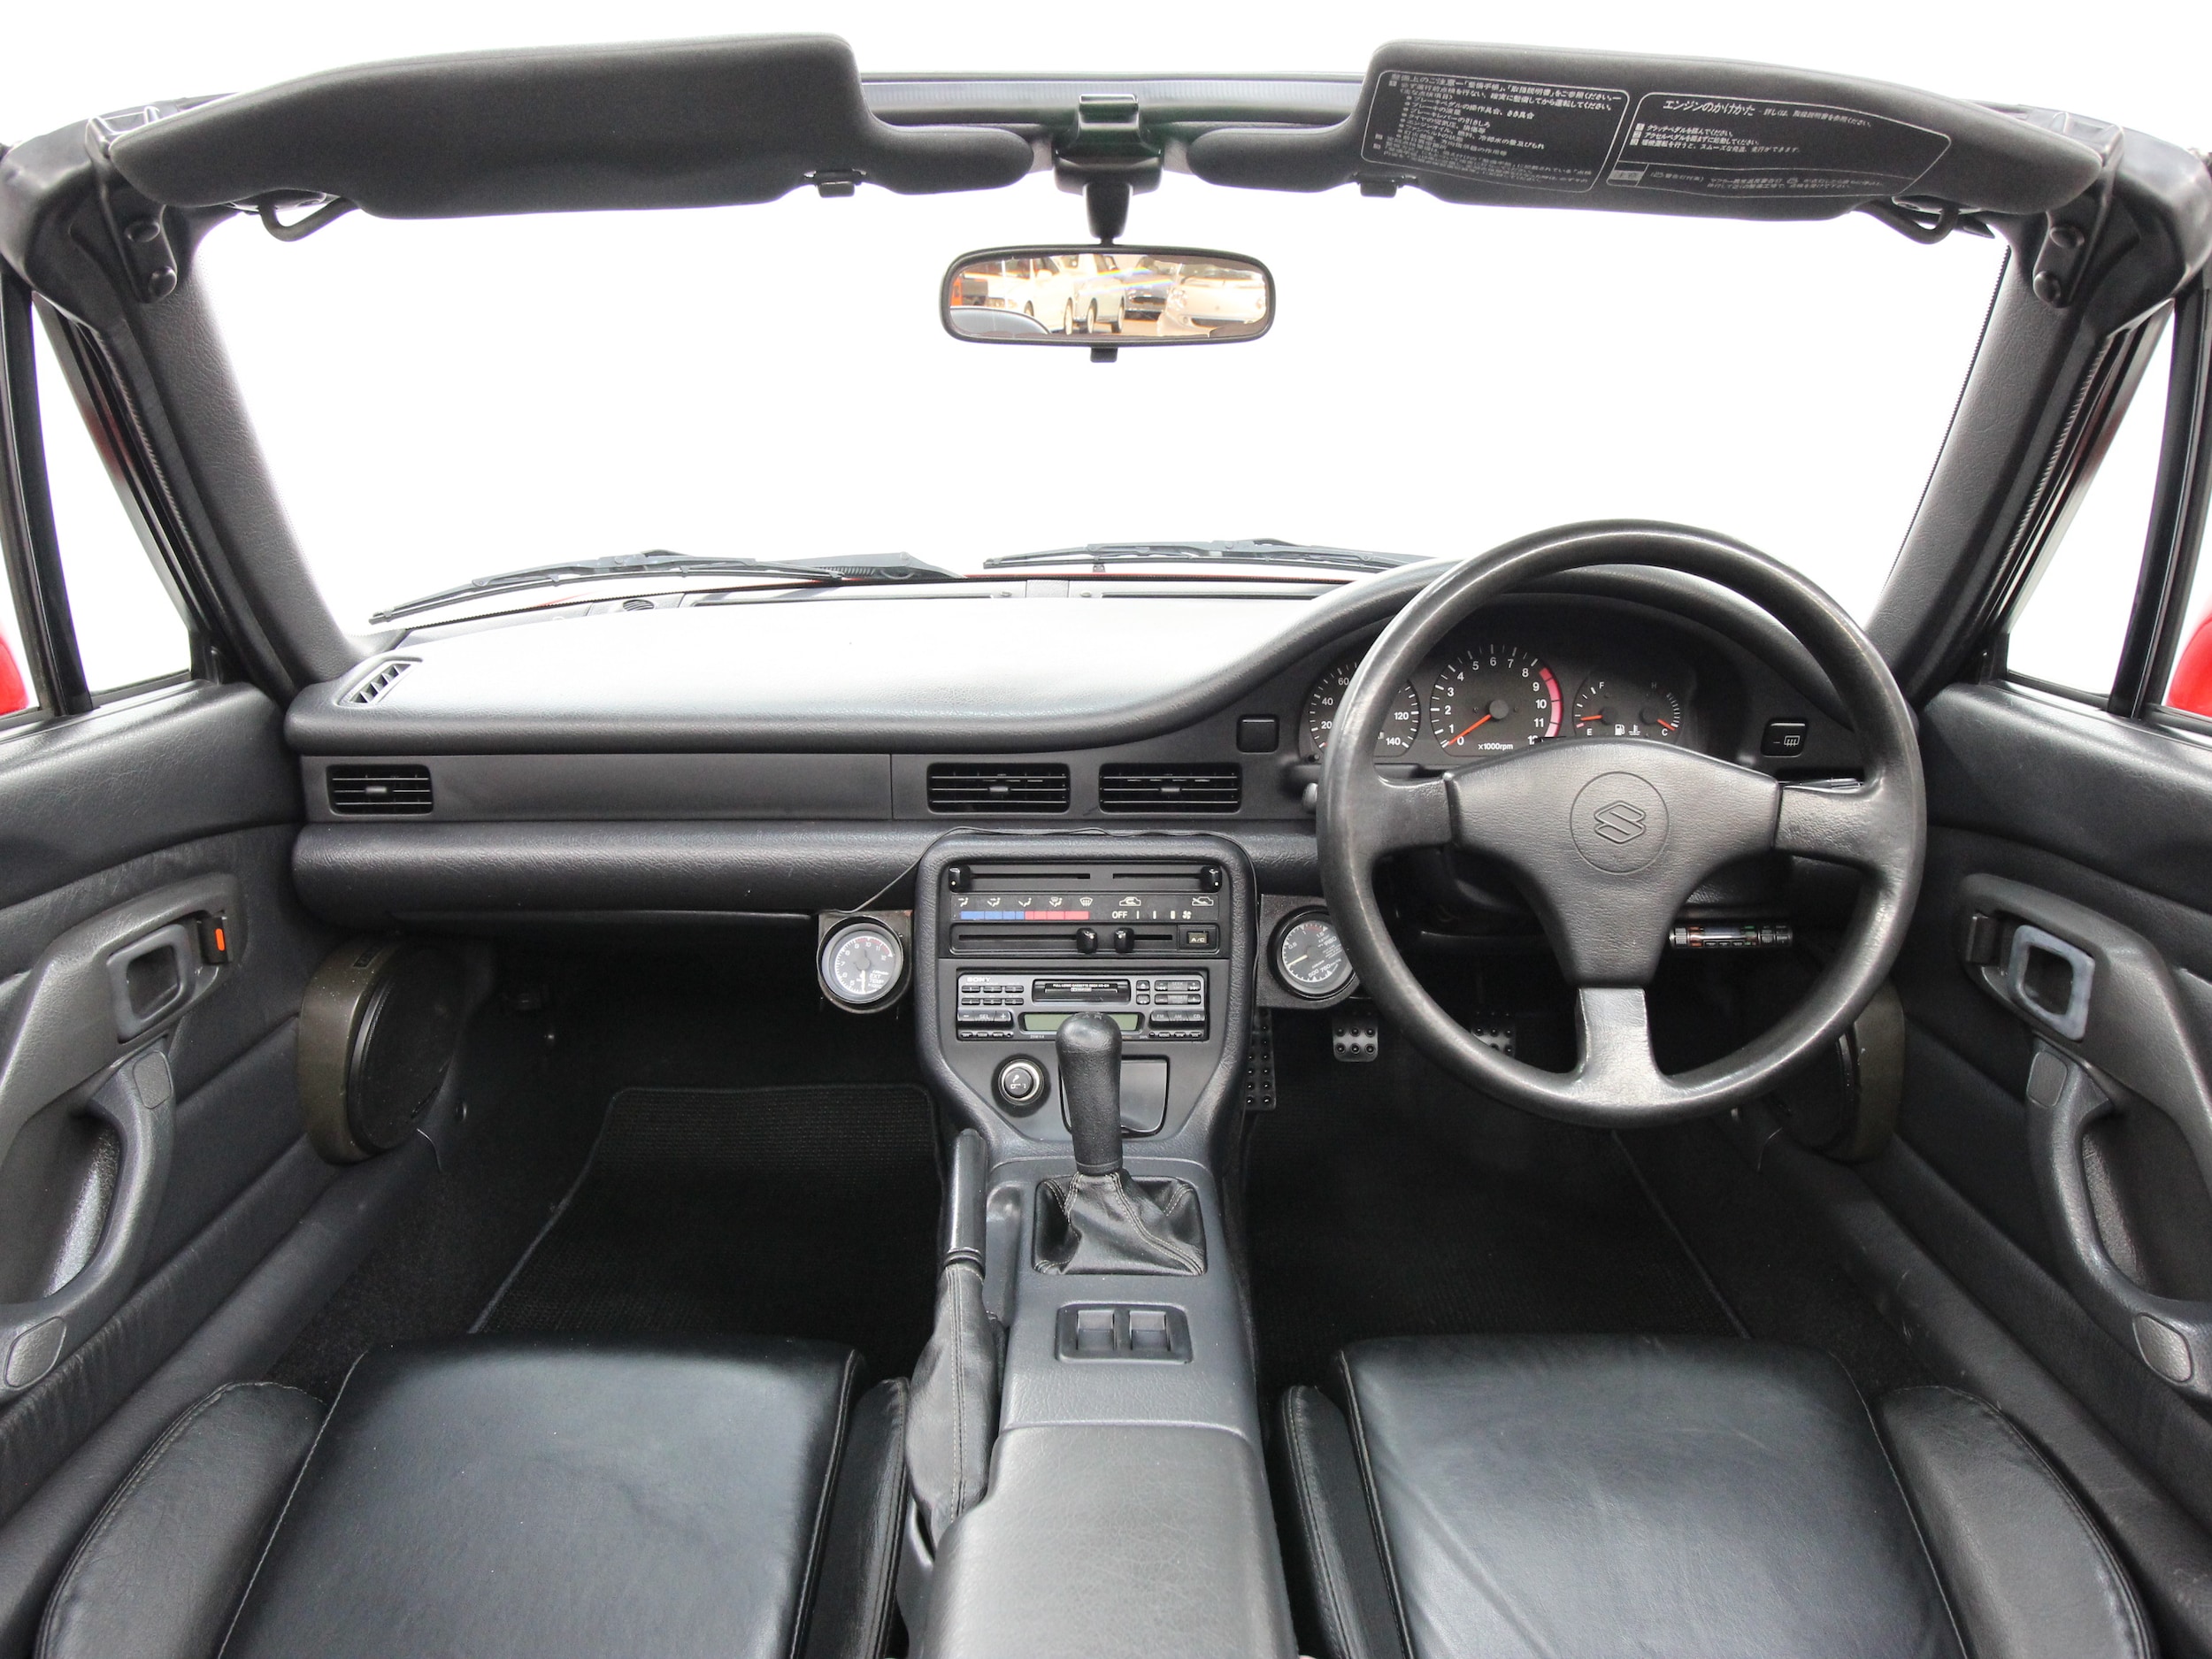 1992 Suzuki Cappuccino 40